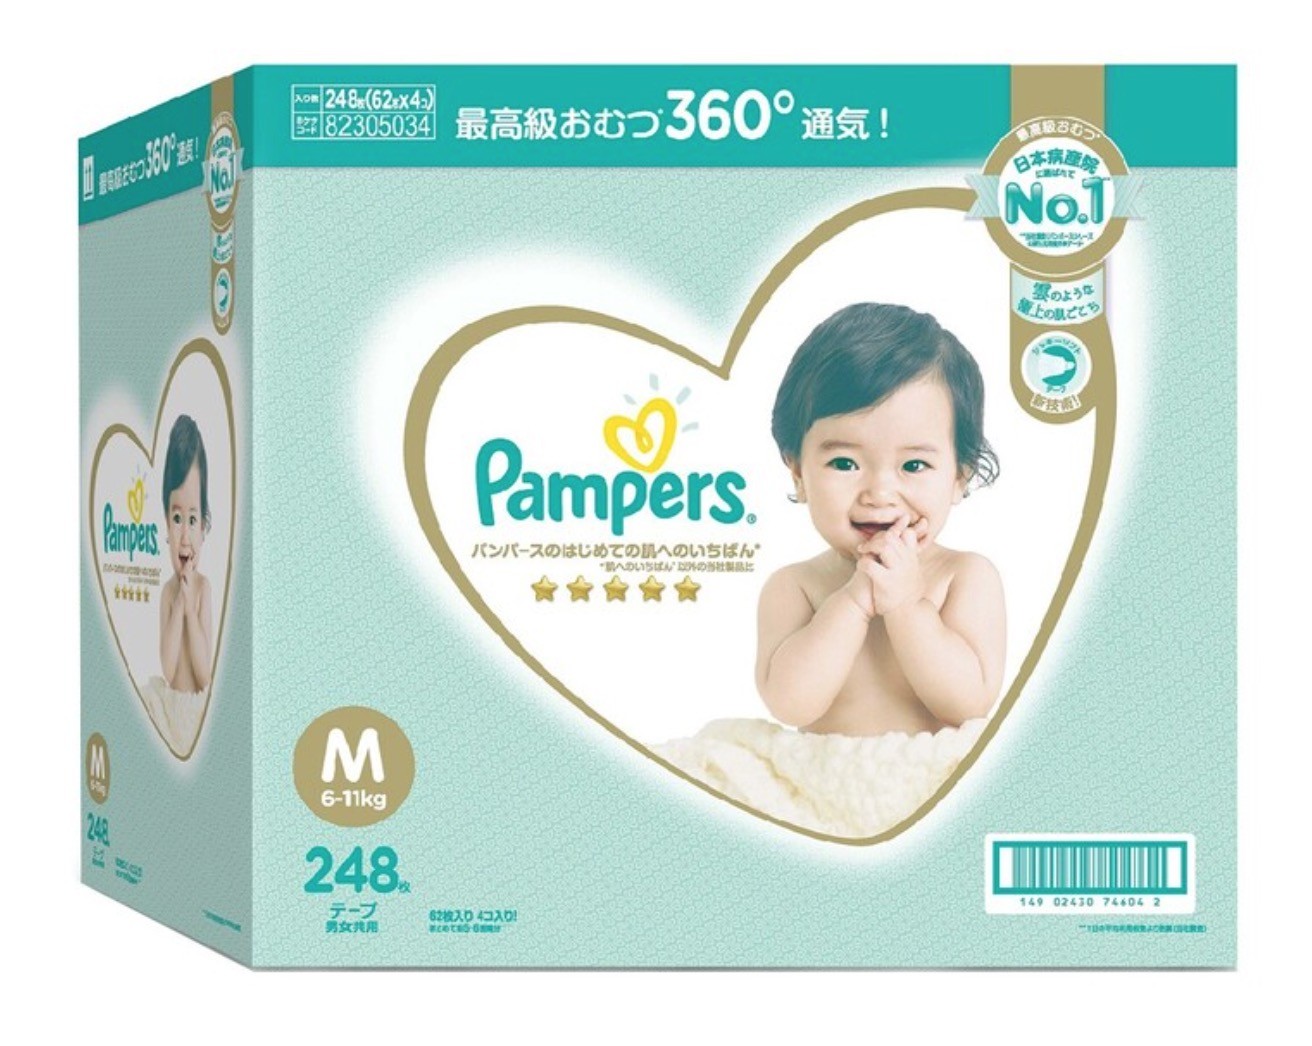 日本原裝進口 幫寶適一級幫紙尿褲 M 號 248 片 - 日本境內版 Pampers Ichiban Diaper Size M 248 Counts